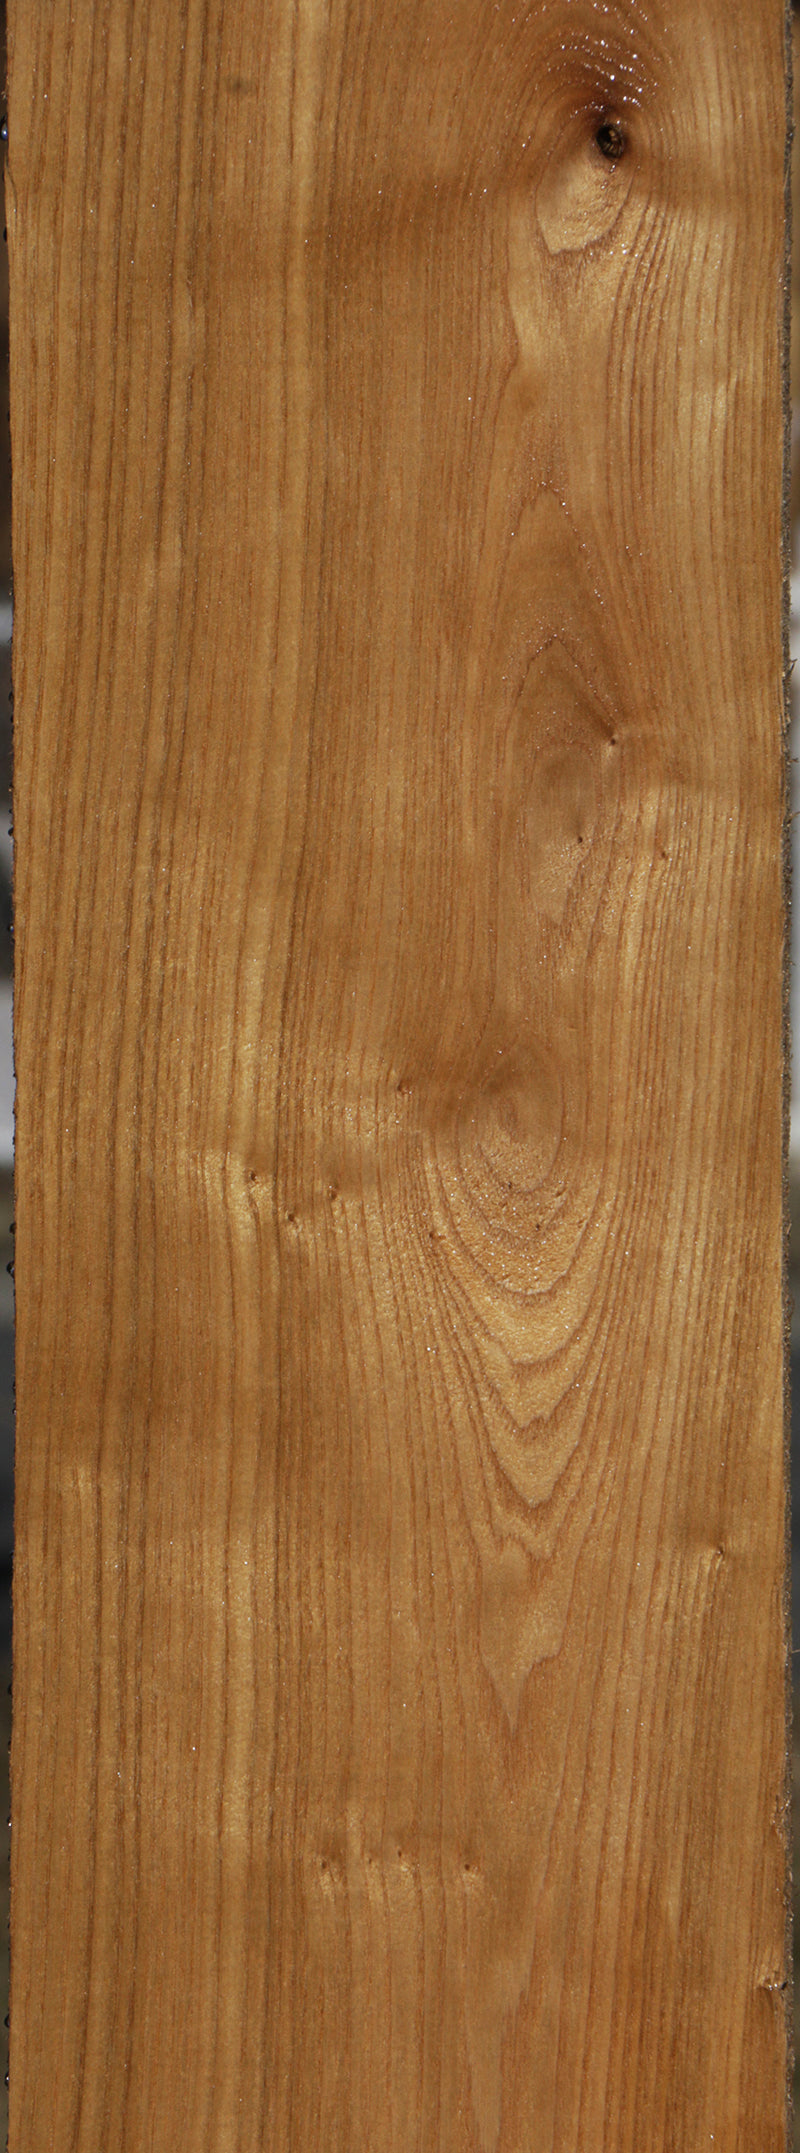 Catalpa Lumber